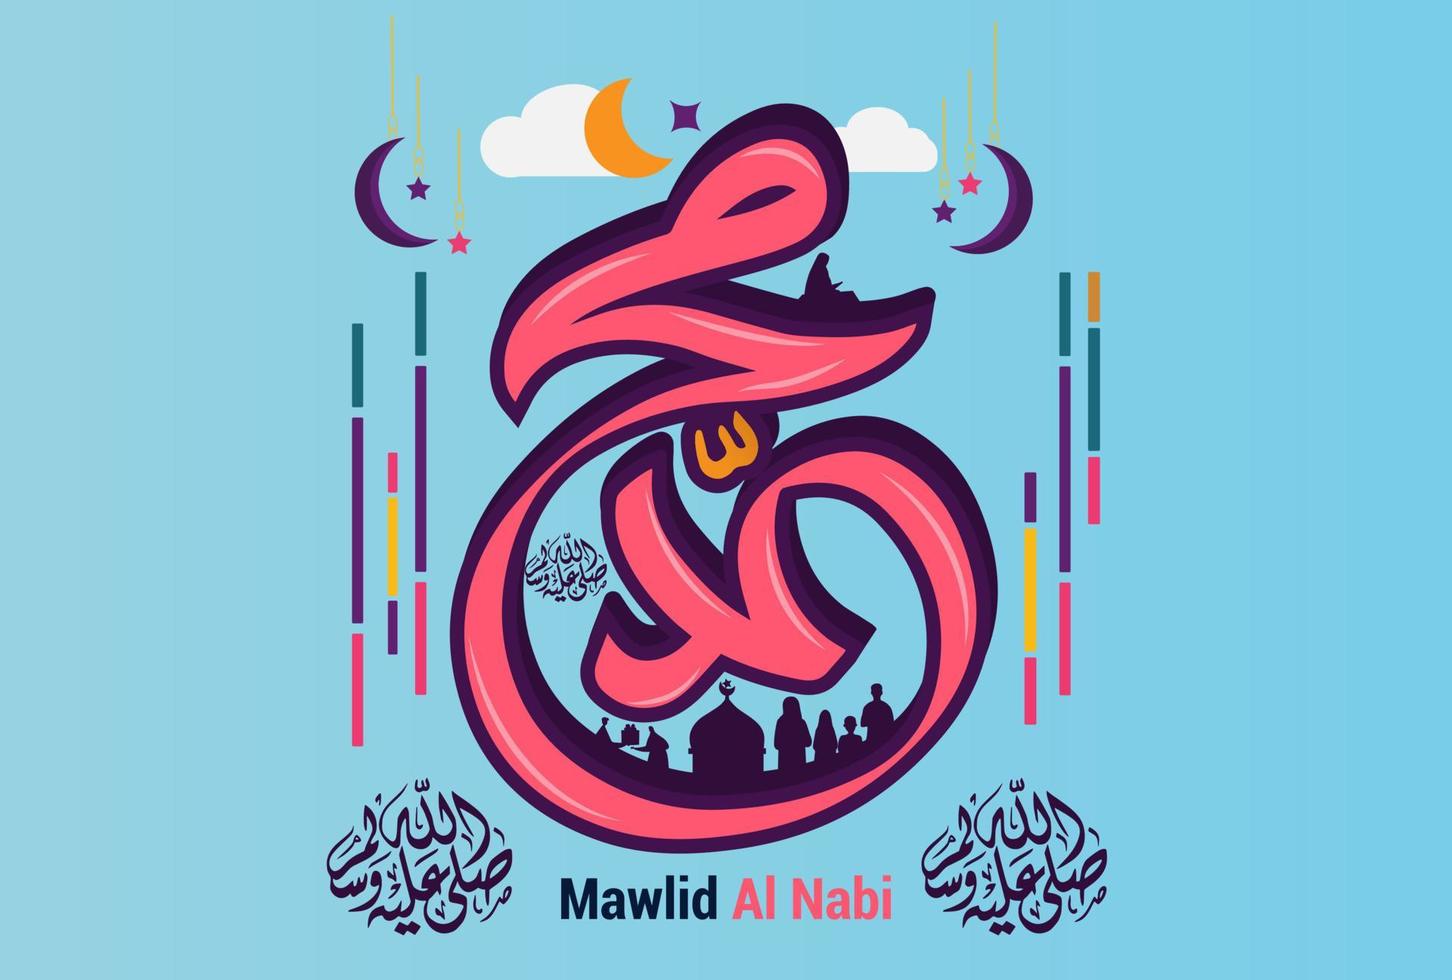 aniversário do profeta muhammad em estilo de caligrafia árabe mawlid al nabi. ilustração vetorial vetor